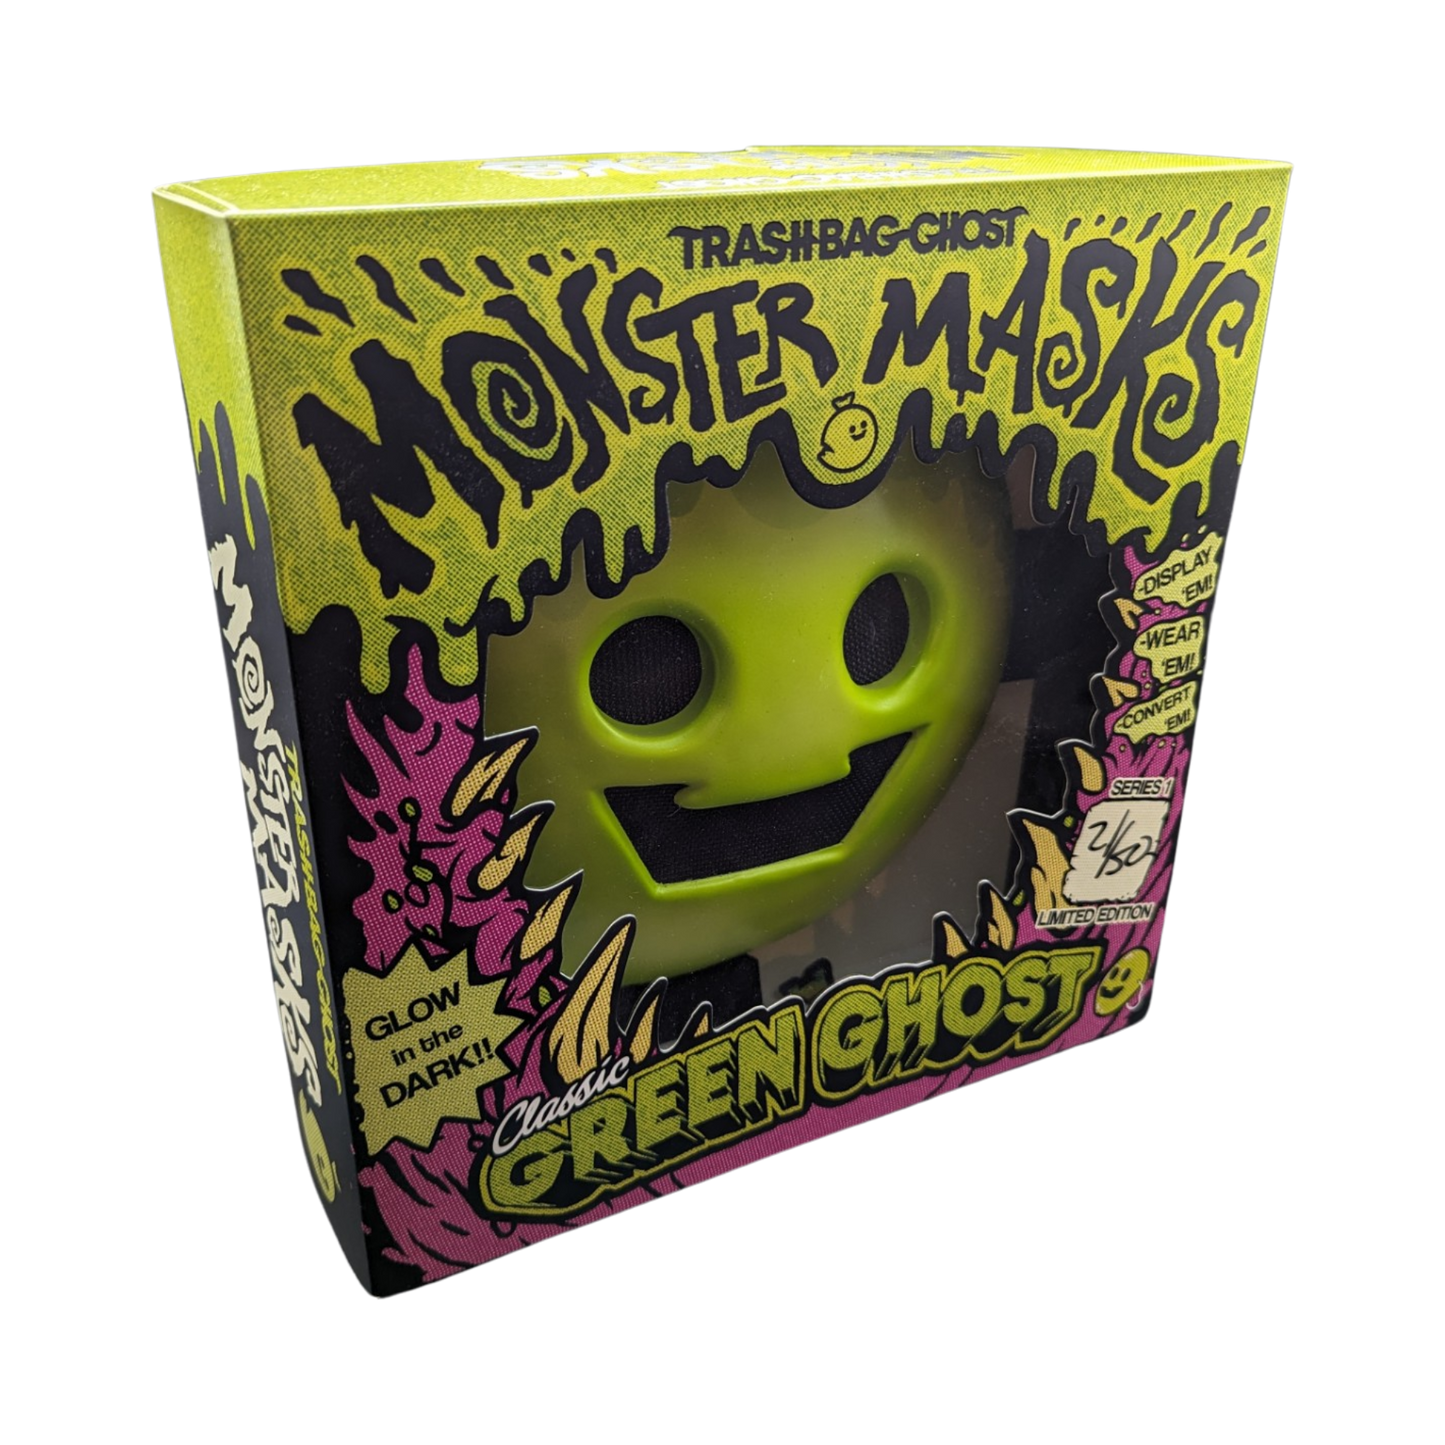 Trashbag Ghost Monster Masks "Classic Green Ghost"